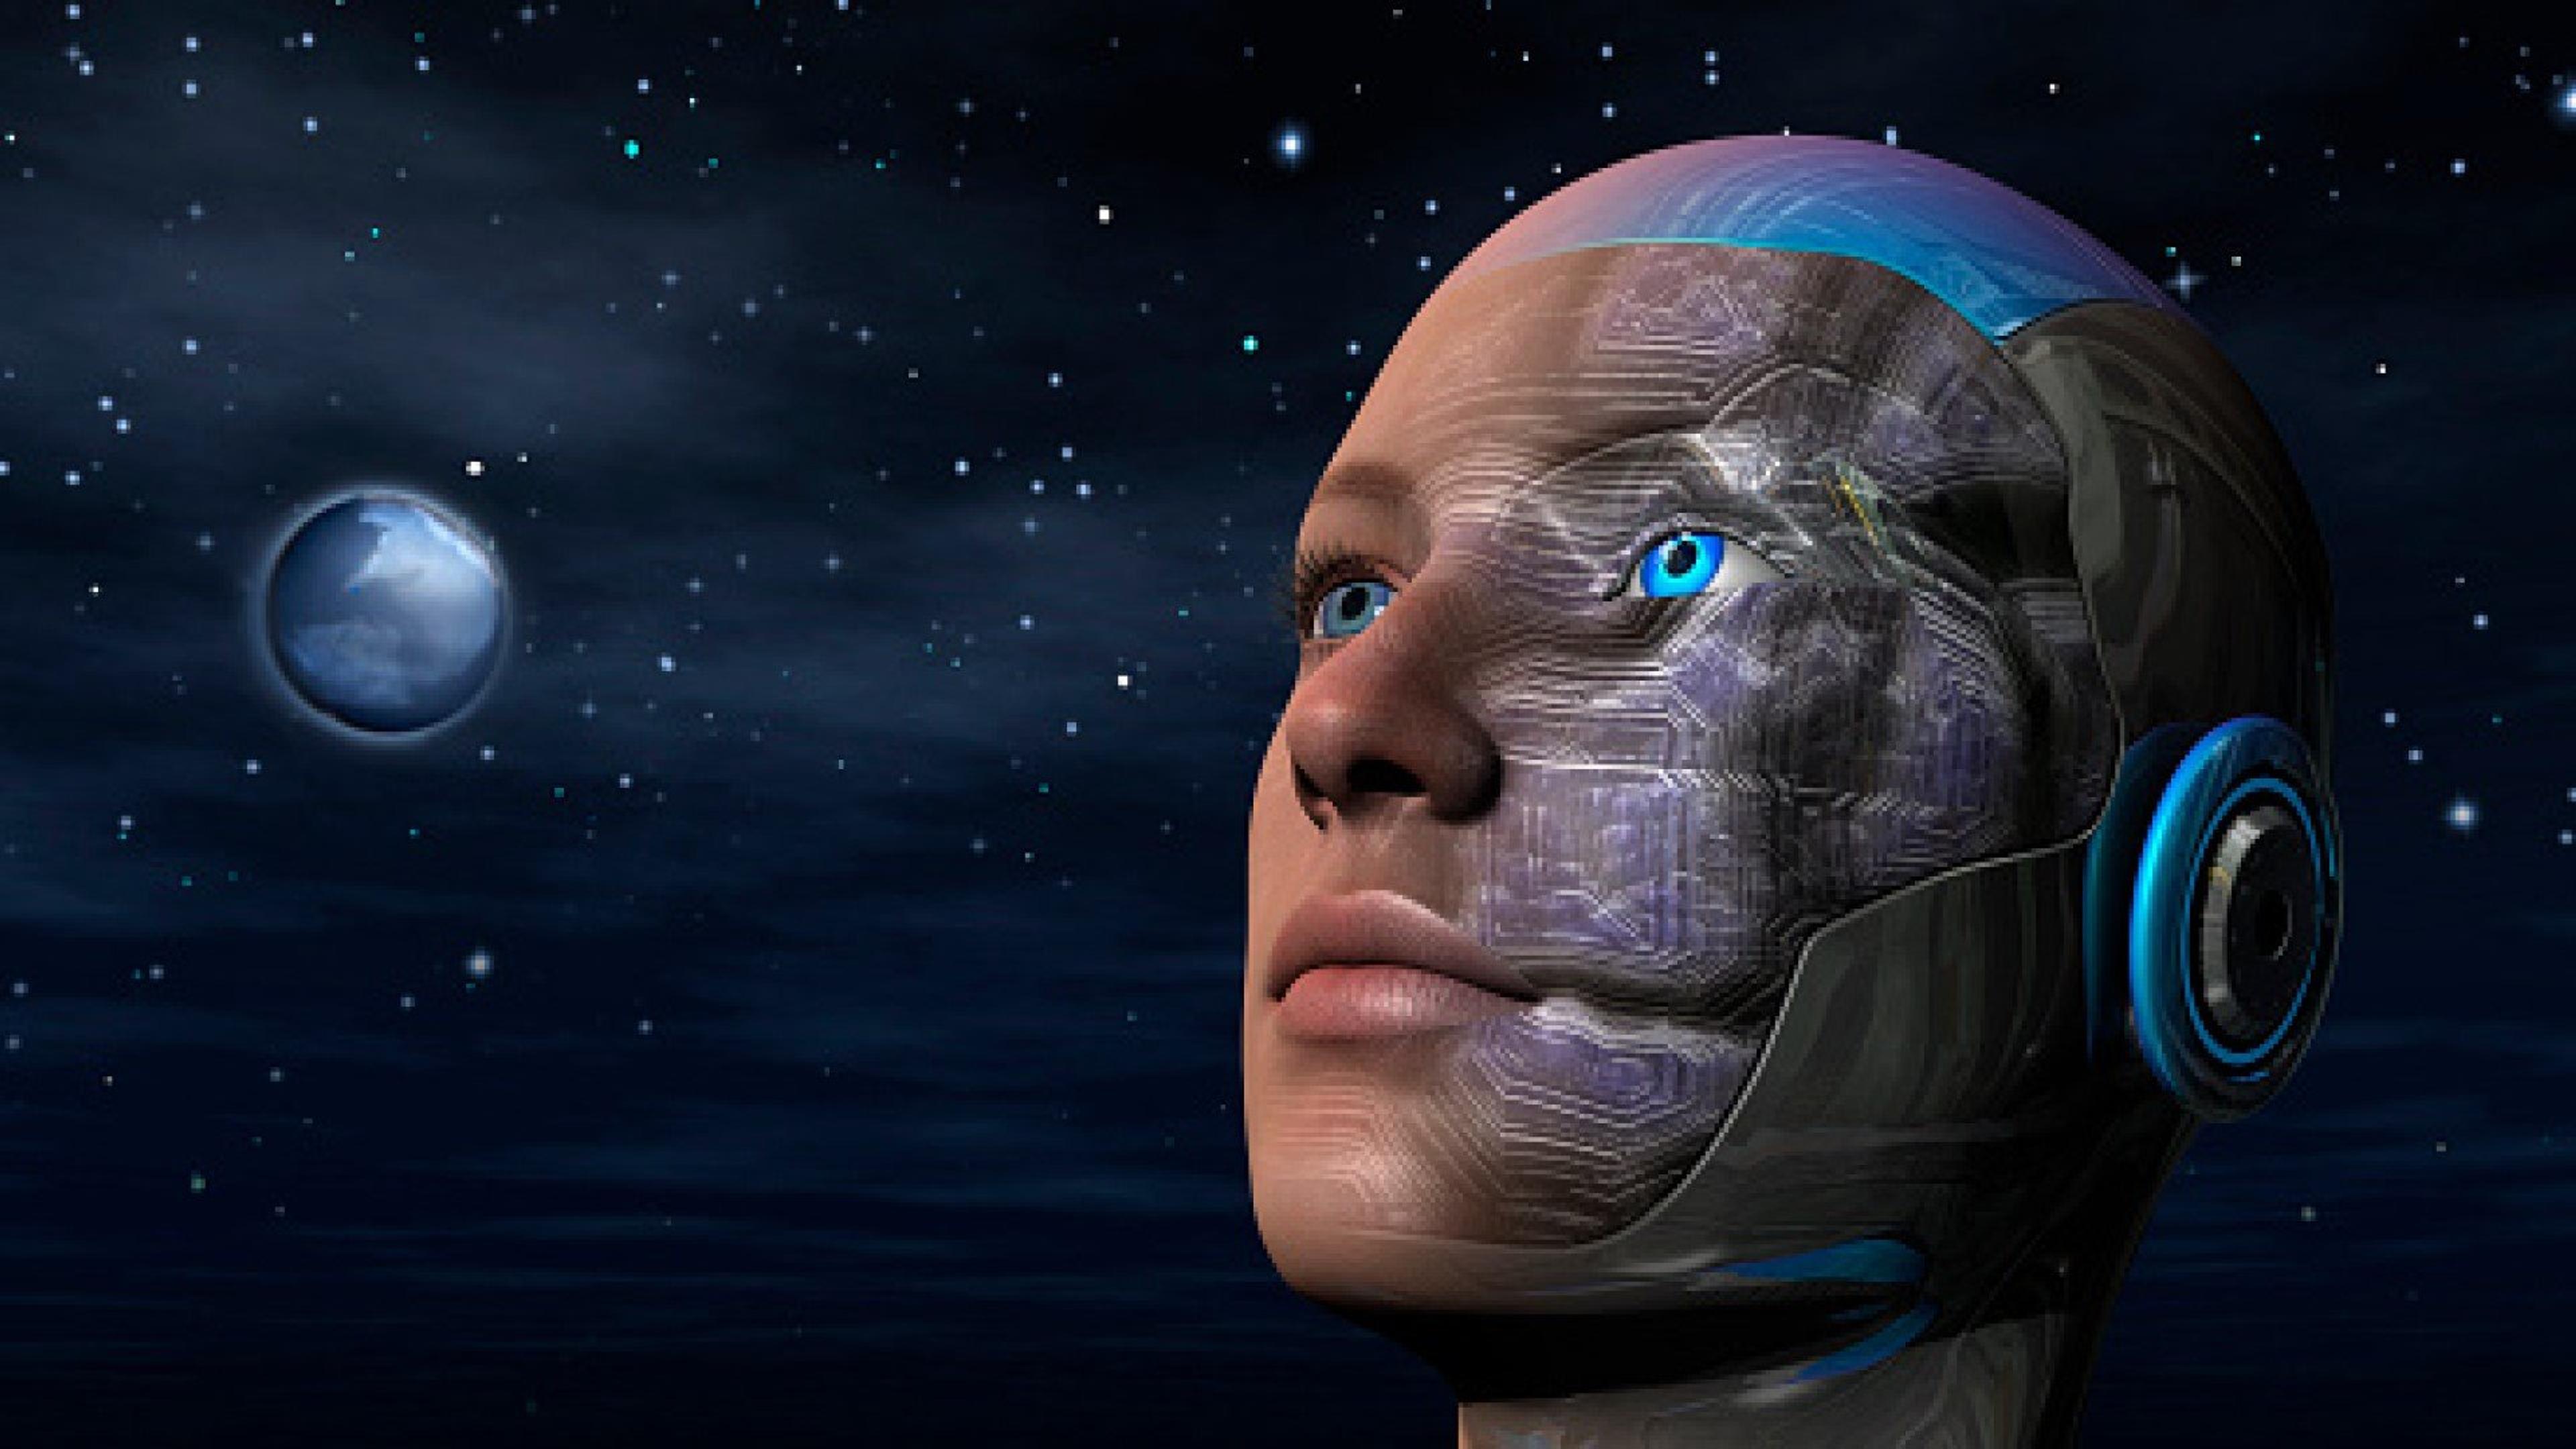 Animert gynoide (kvinnelig androide) som ser utover nattehimmelen